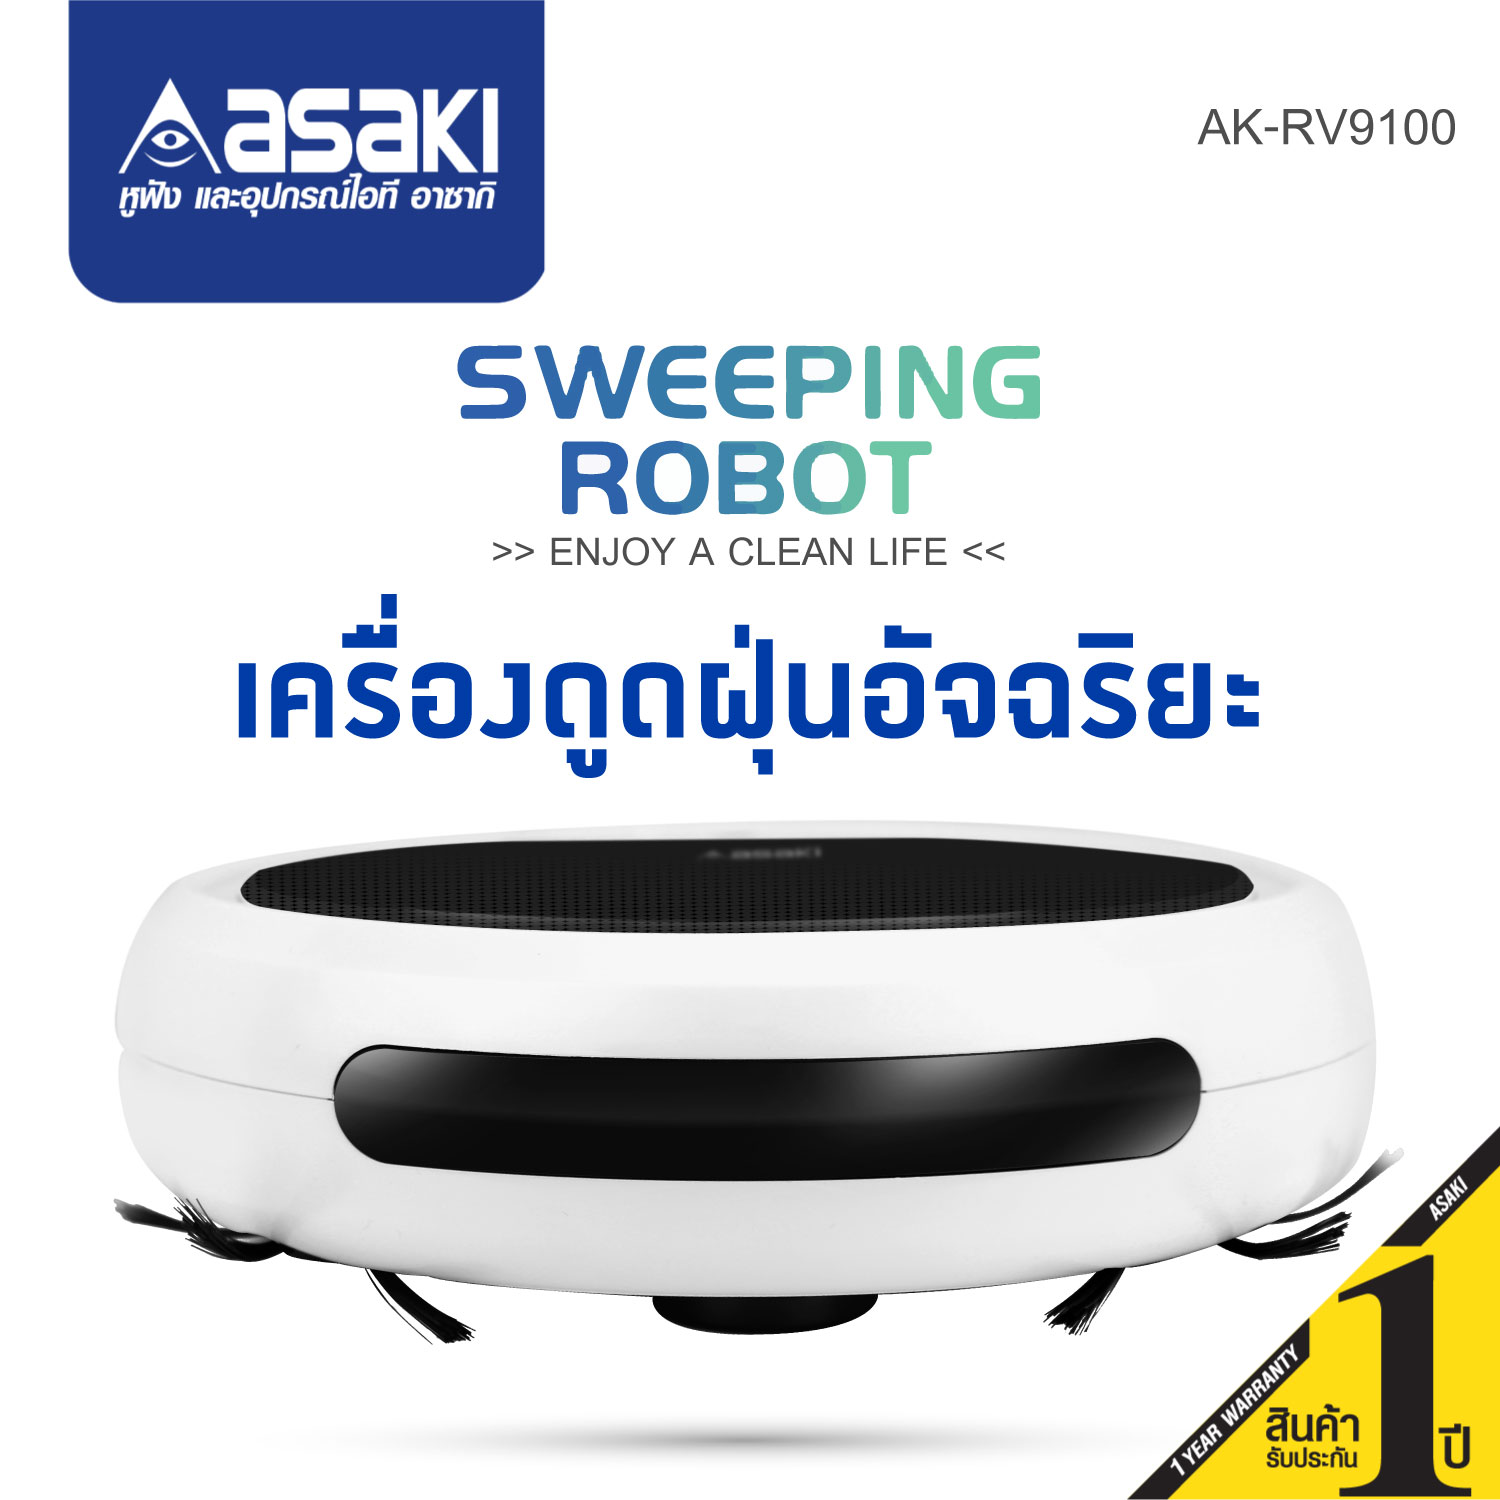 Asaki Robot Vacuum Cleaner หุ่นยนต์ดูดฝุ่นอัจฉริยะทำความสะอาดอัตโนมัติ ขนาดบางเพียง 7 ซม. กระทัดรัด น้ำหนักเบา รุ่น AK-RV9100